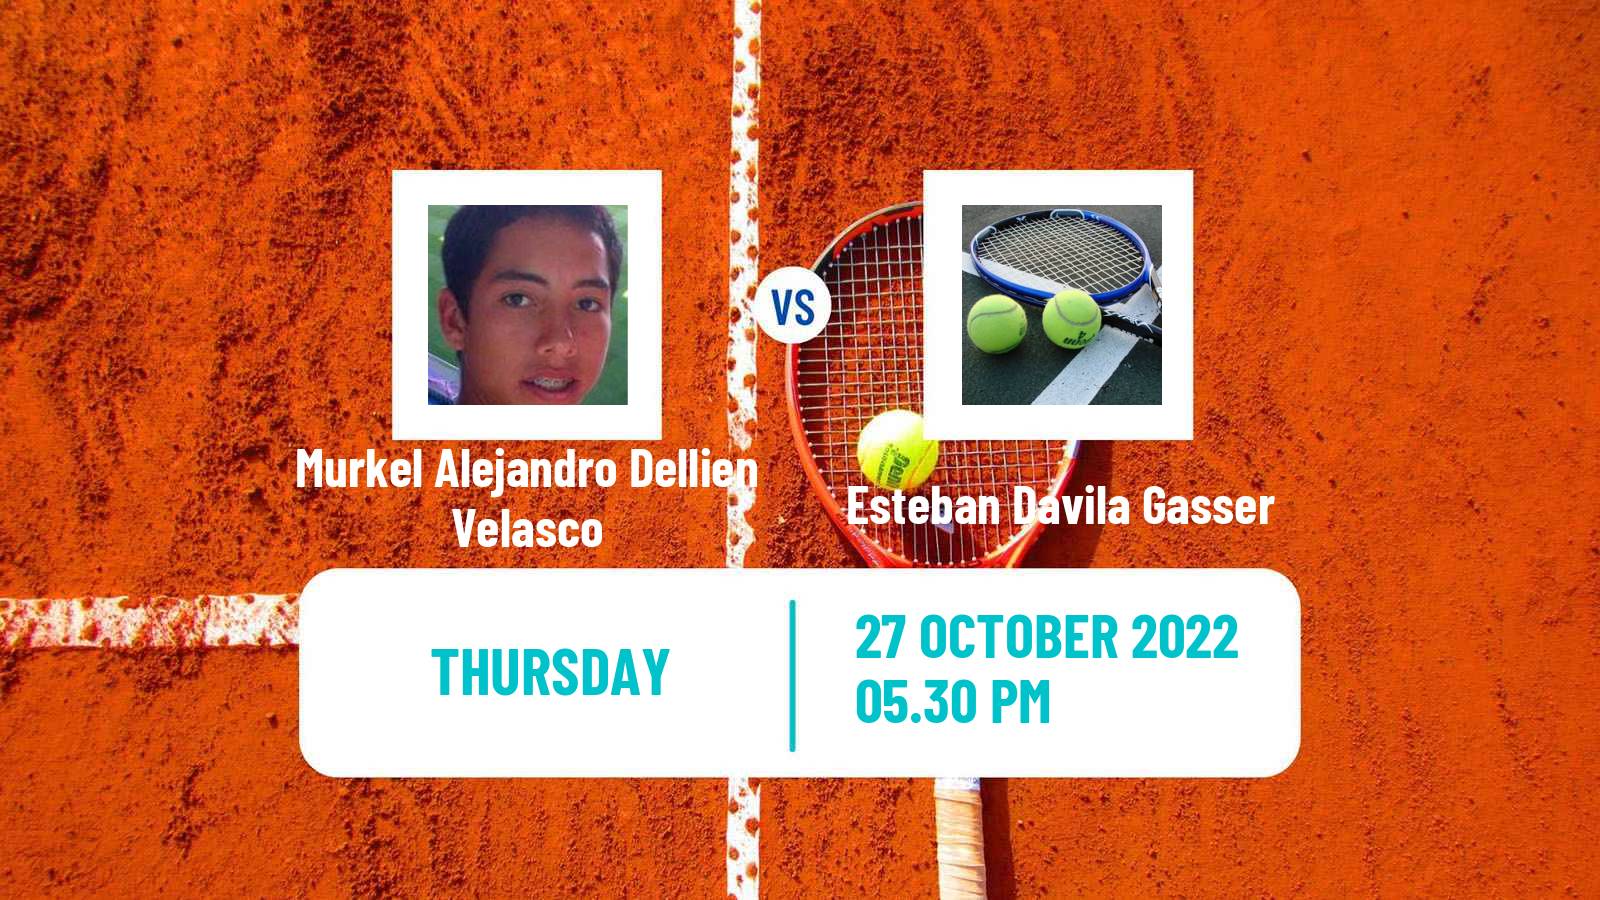 Tennis ITF Tournaments Murkel Alejandro Dellien Velasco - Esteban Davila Gasser